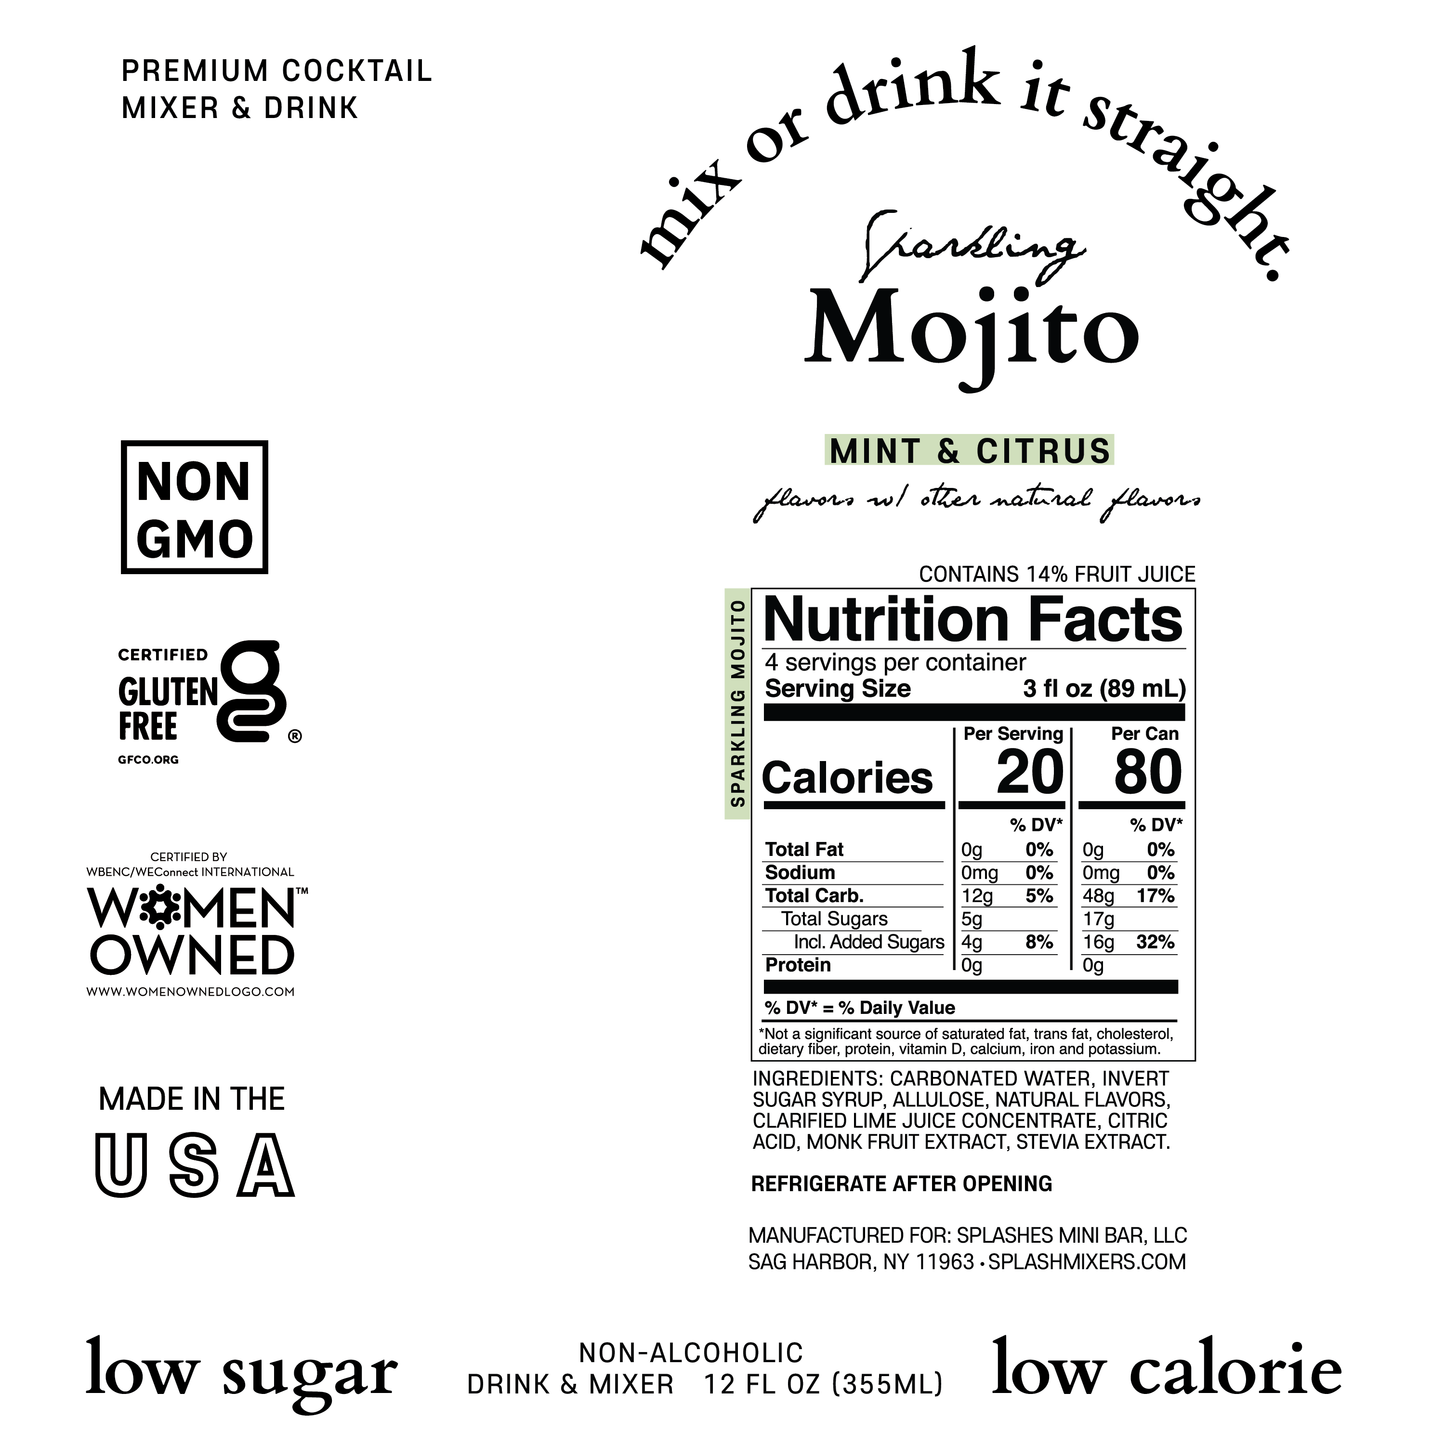 Sparkling Mojito | Mint & Citrus